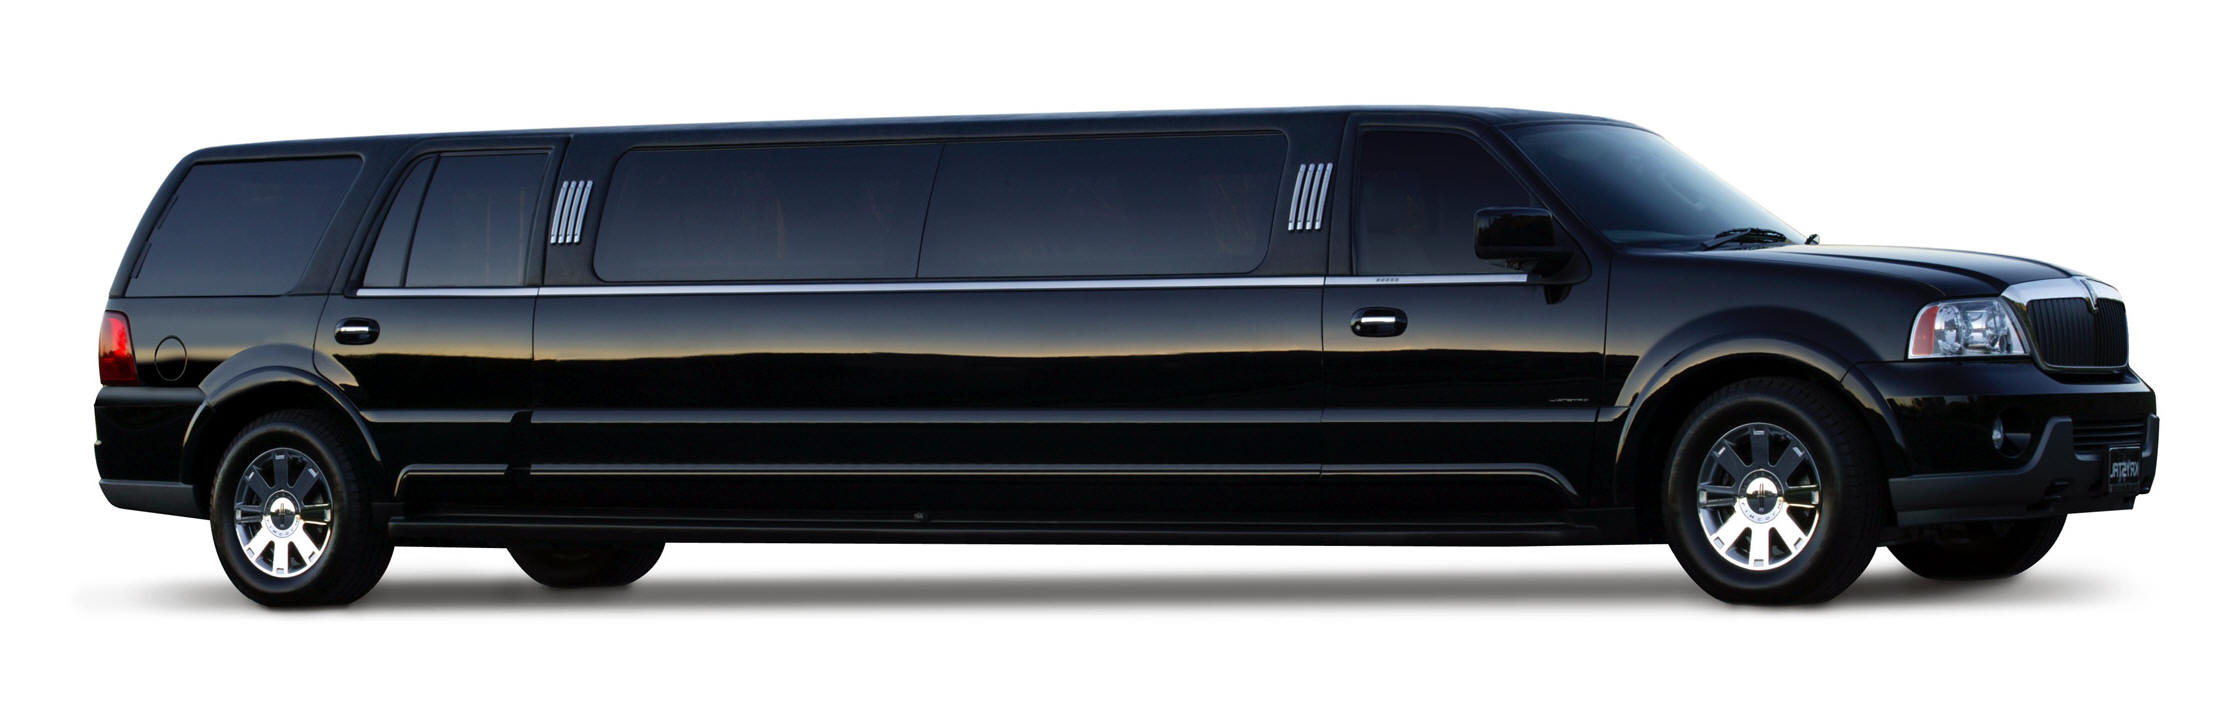 Lincoln Navigator Limousine